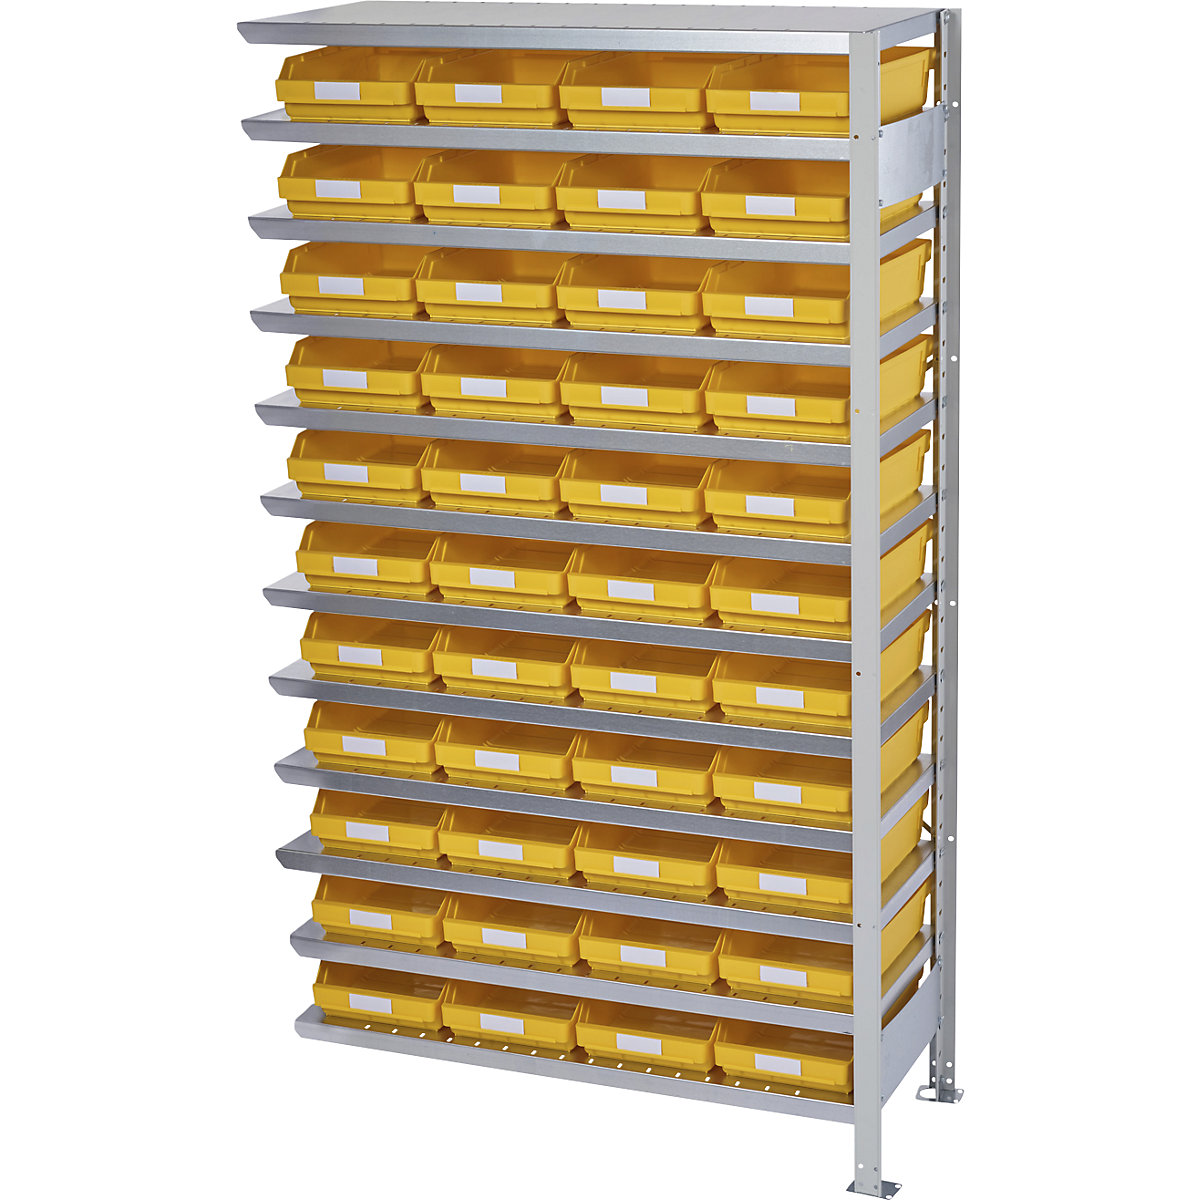 Zásuvný regál s regálovými přepravkami – STEMO, výška regálu 1790 mm, přístavný regál, hloubka 300 mm, 44 přepravek žlutých-19